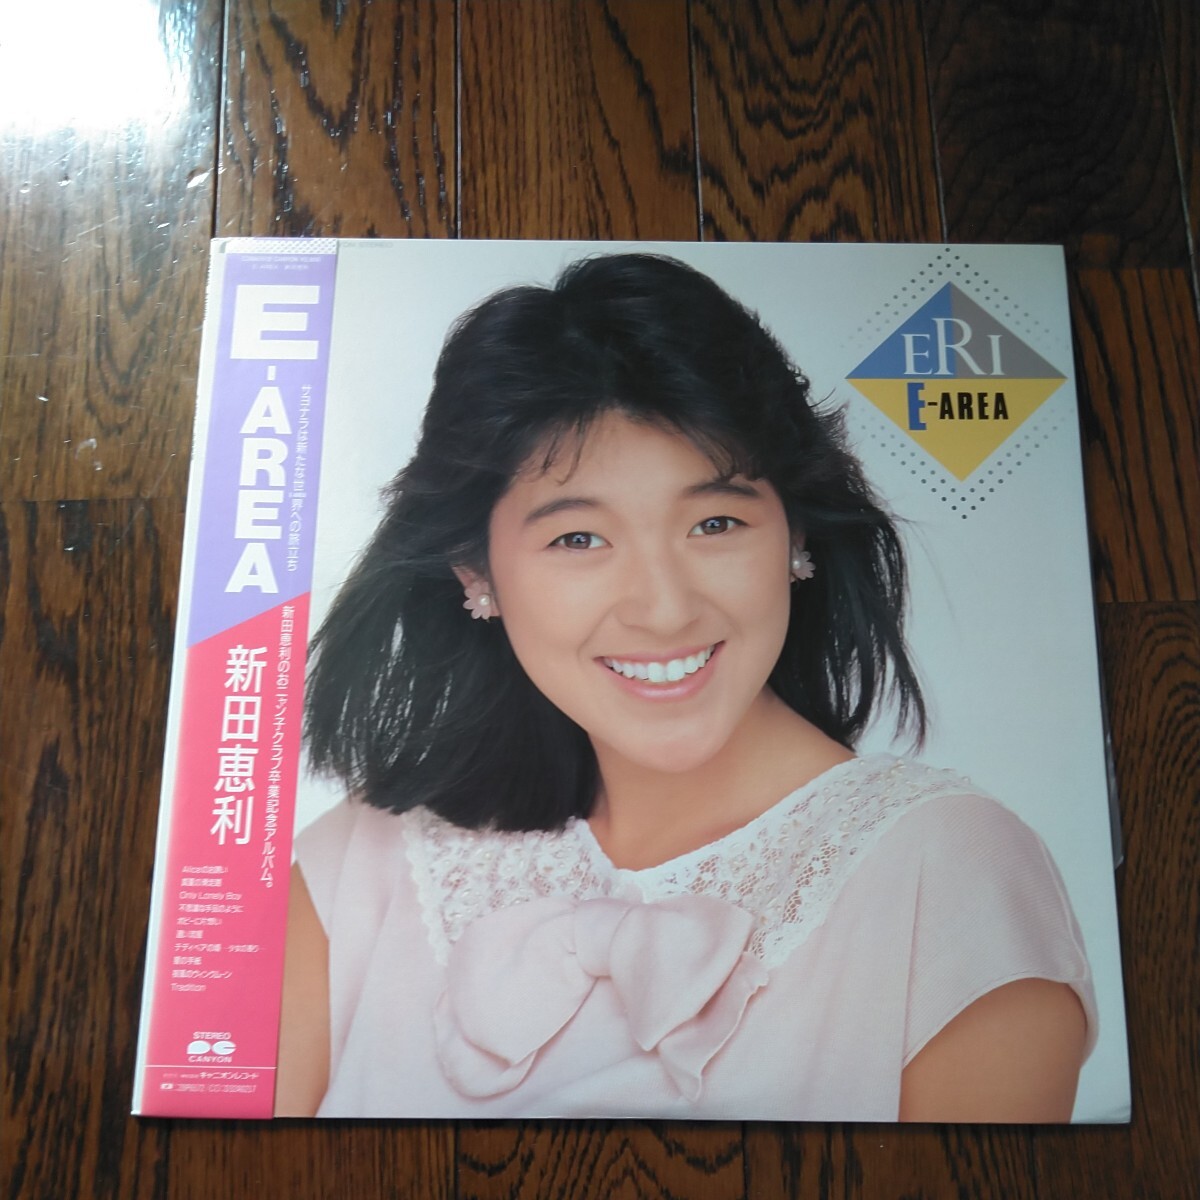 LP レコード 新田恵利 E-area E-AREA 帯付_画像1